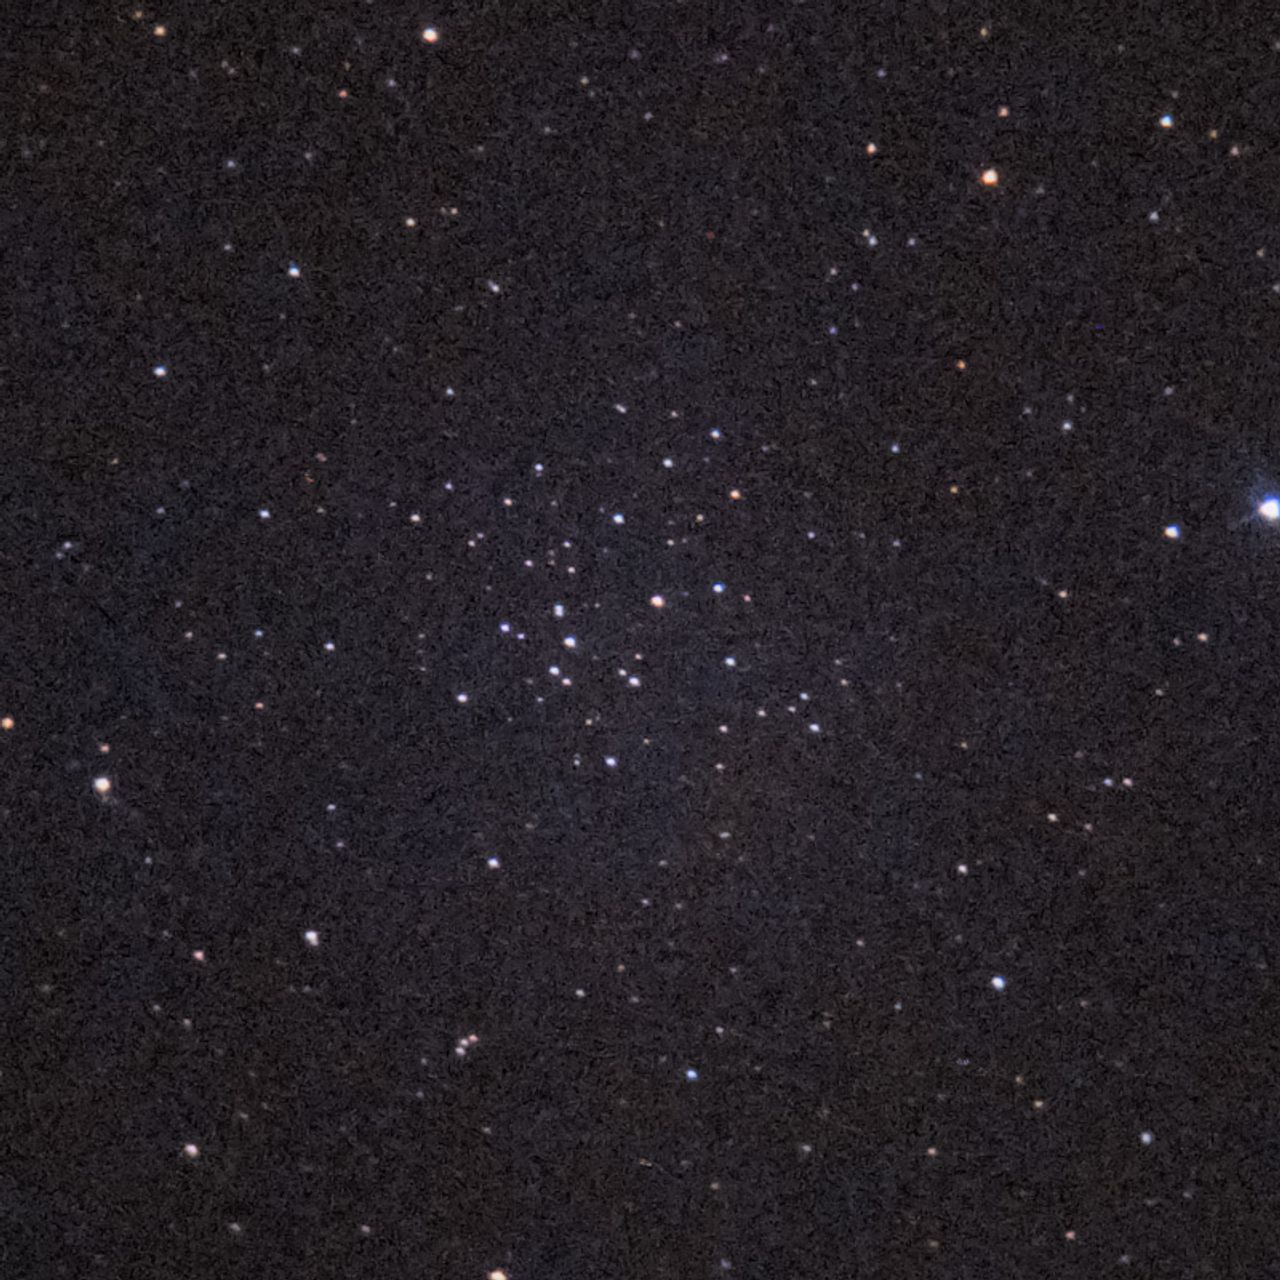 NGC2215